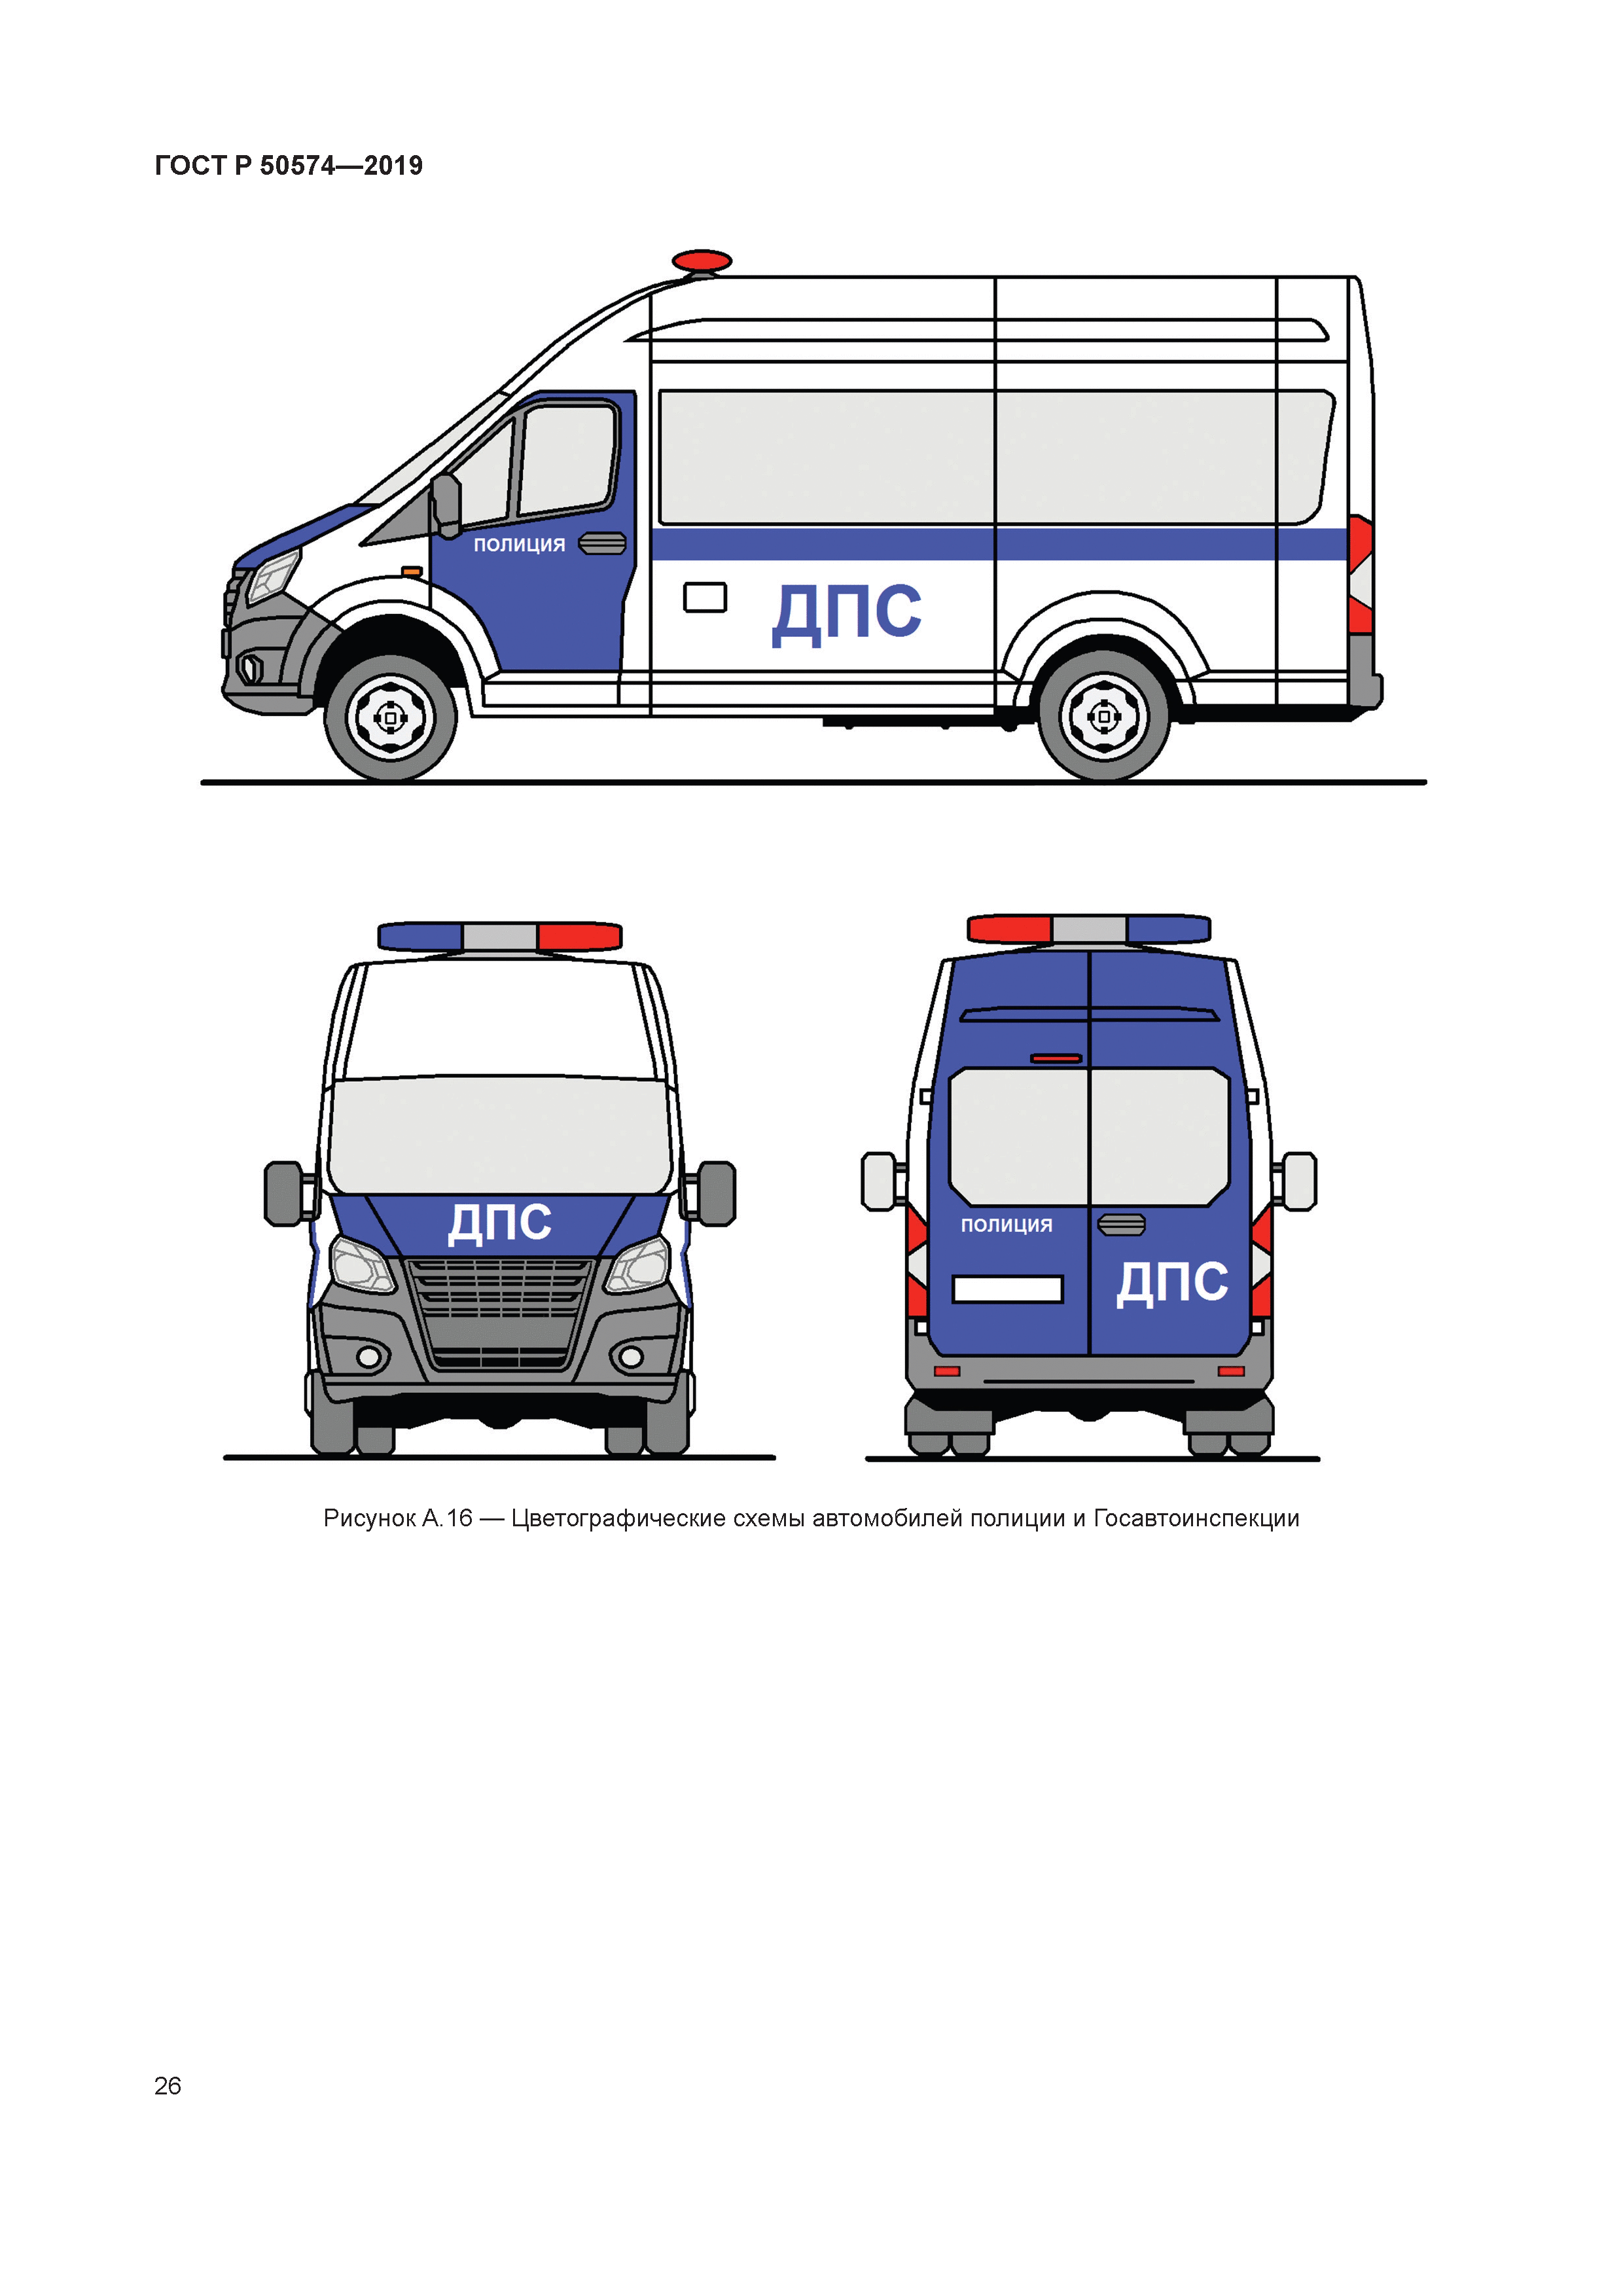 Цветографическая схема автомобиля оперативной службы полиции